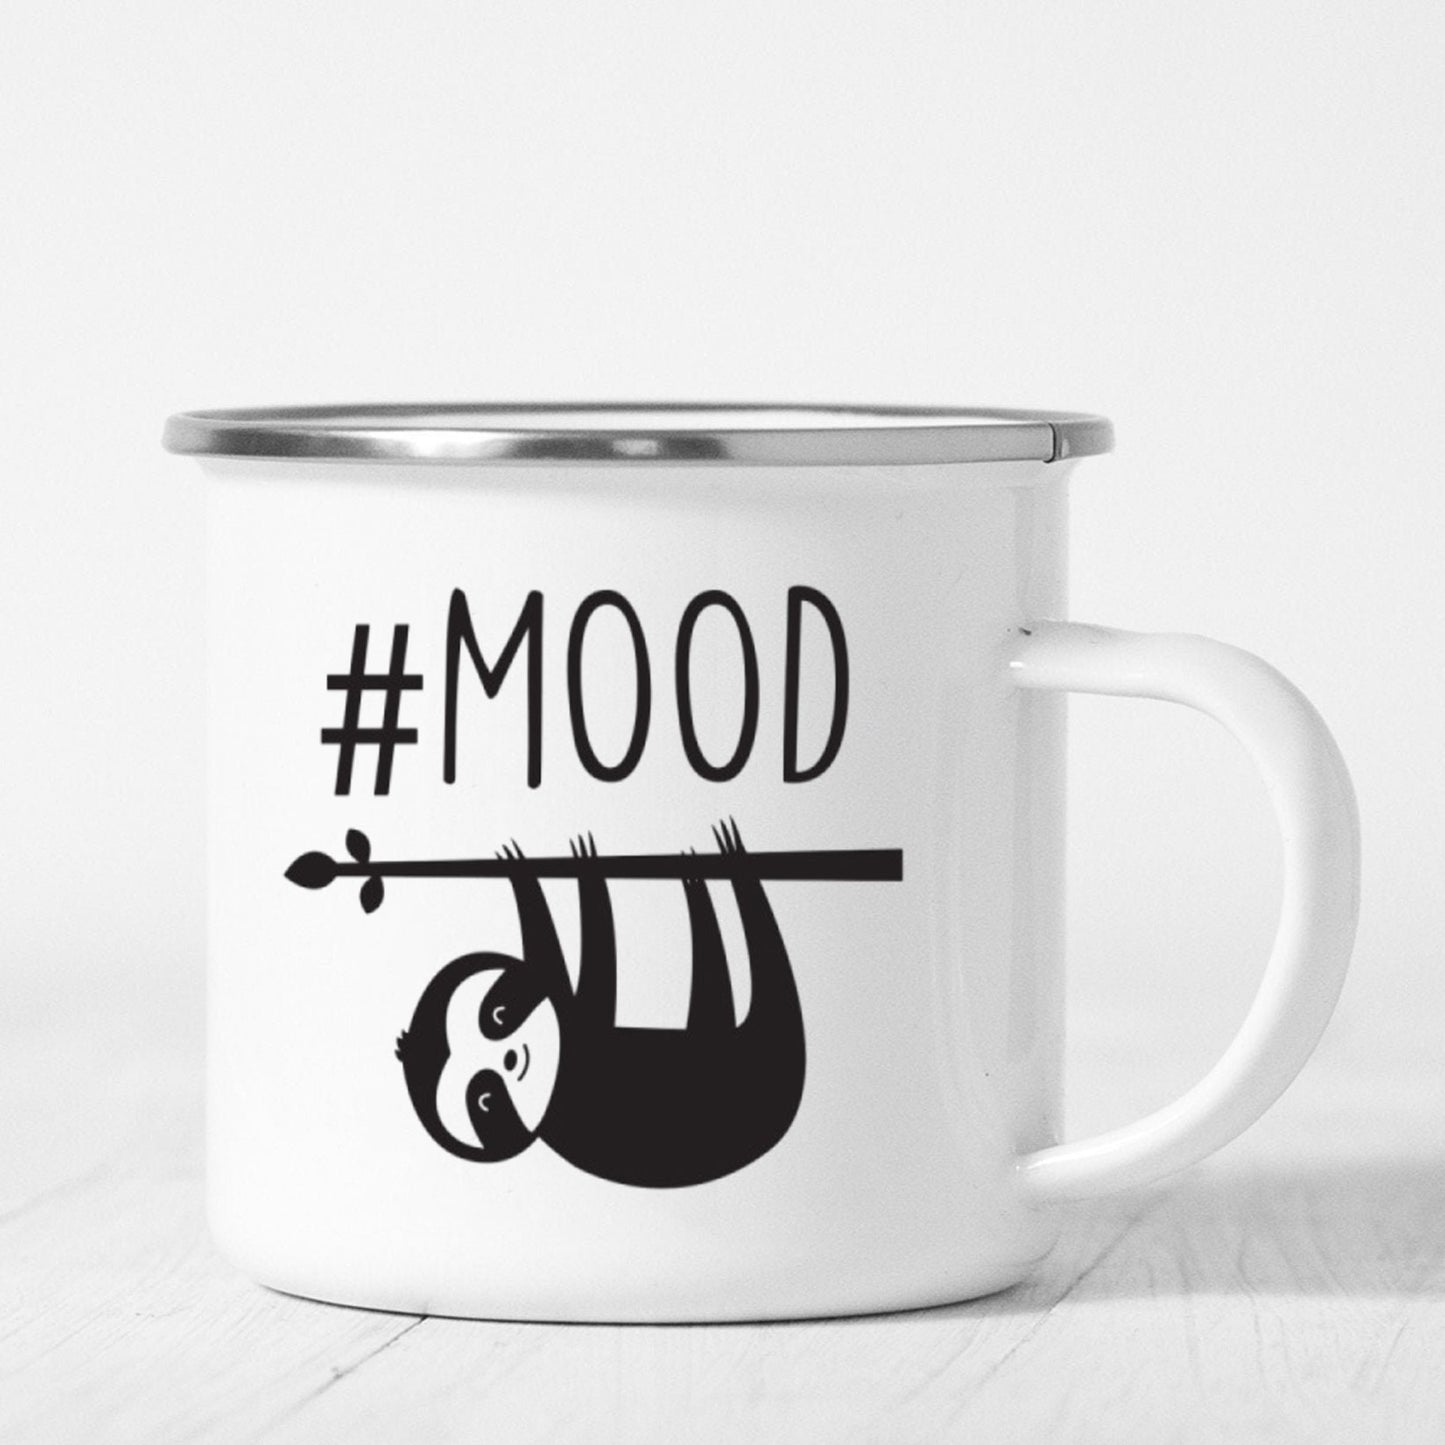 My Mood Mug